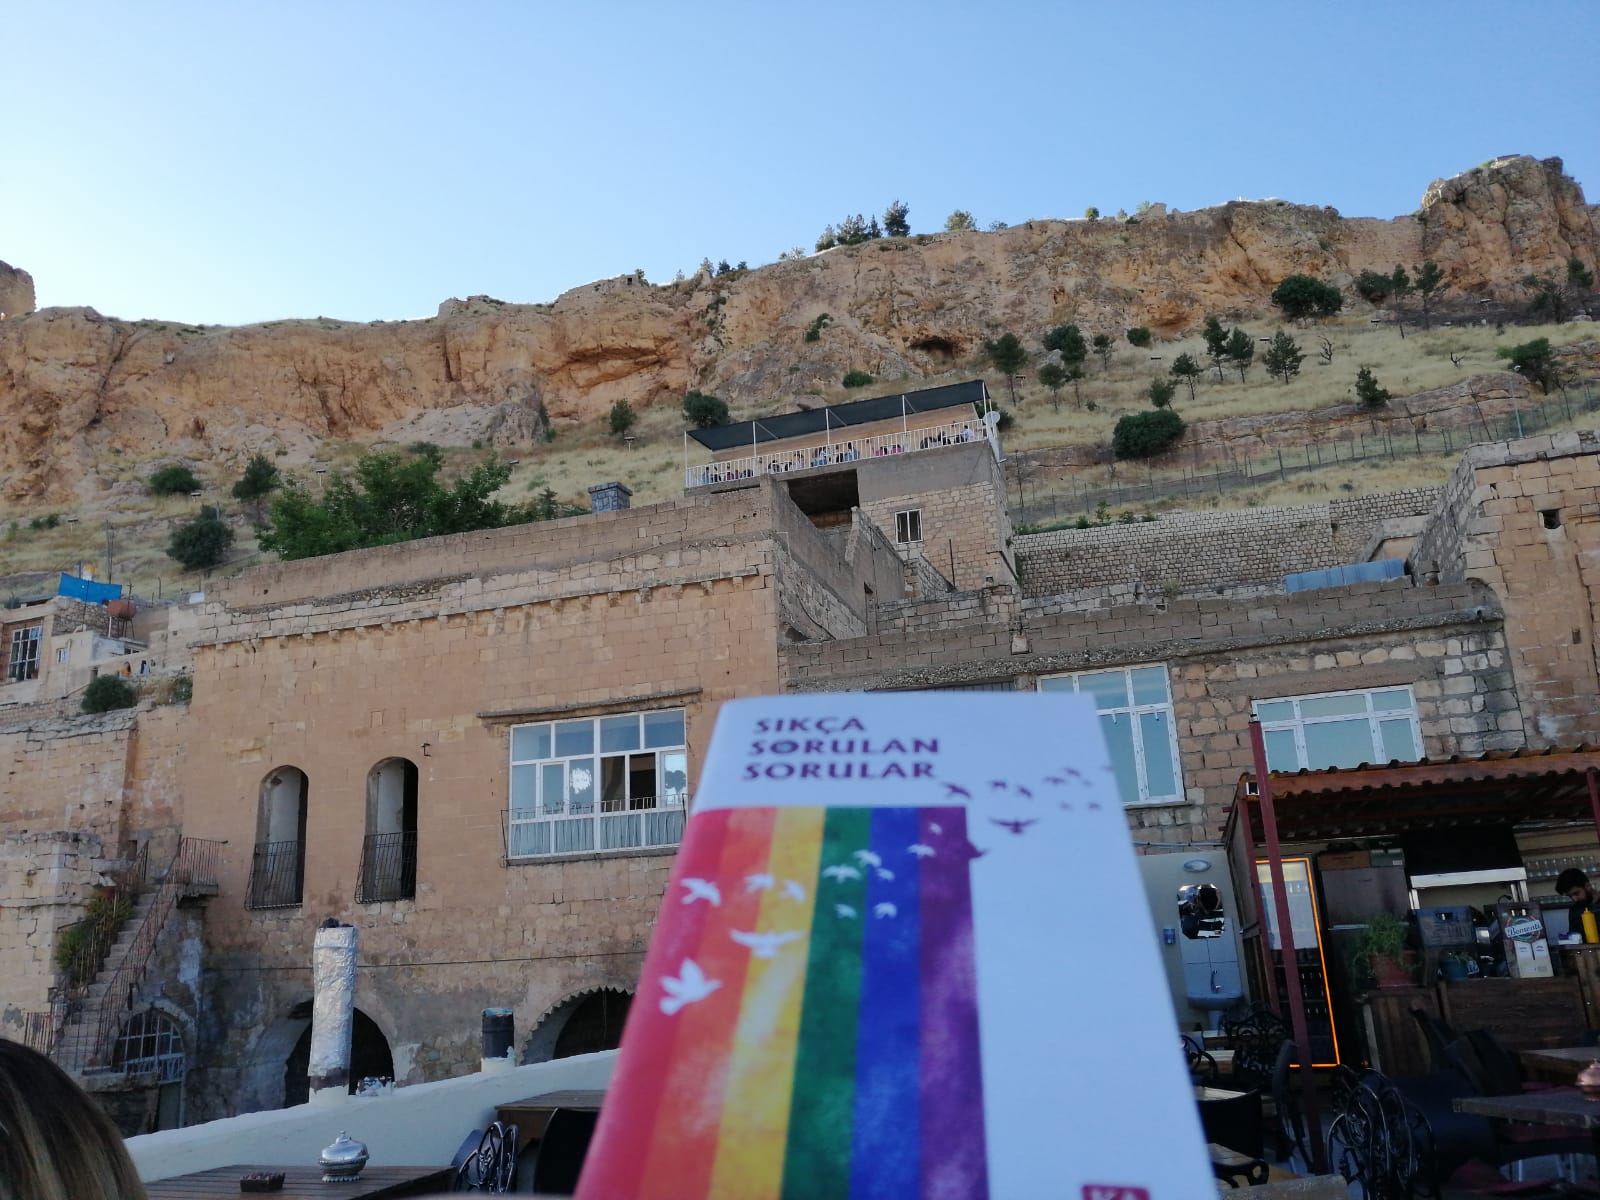 Ayrımcılık karşıtı ruh sağlığı çalışanları Mardin’de buluştu Kaos GL - LGBTİ+ Haber Portalı